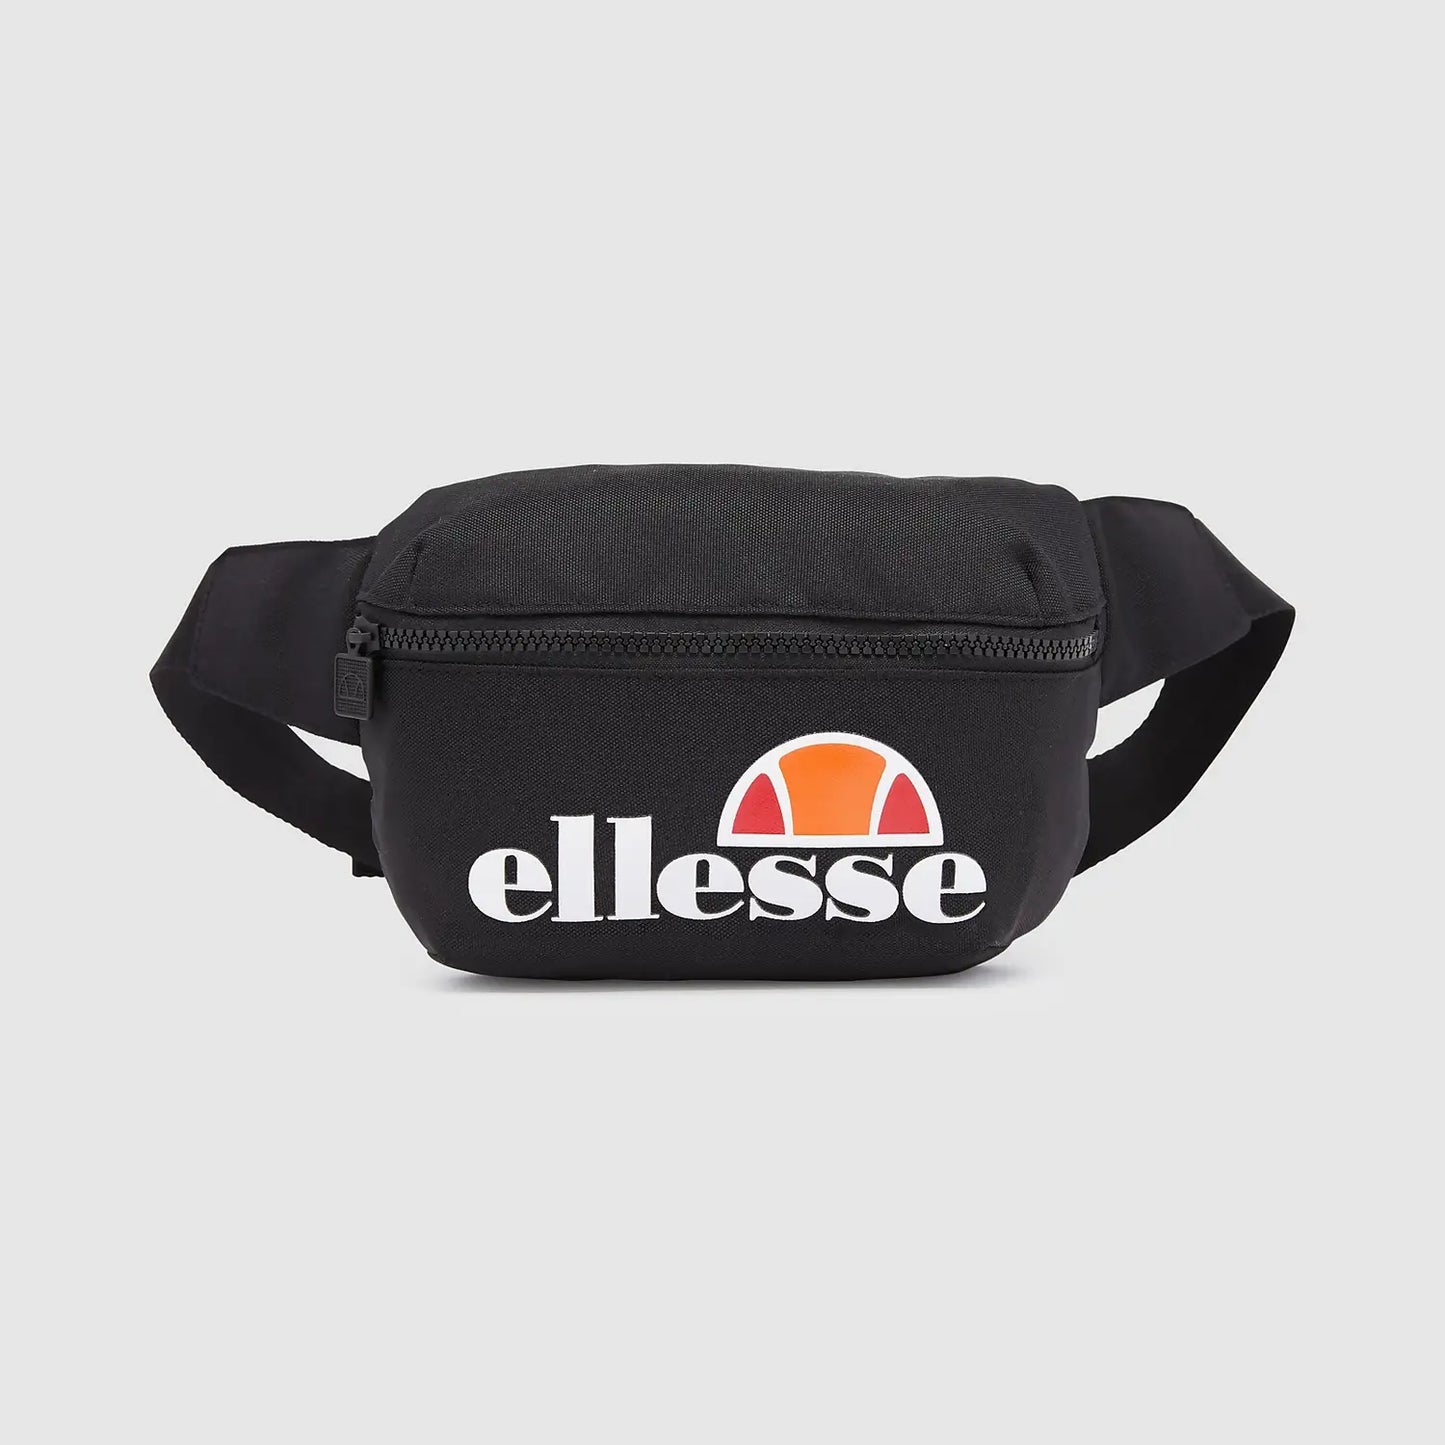 Ellesse Rosca Cross Body Bag-Black